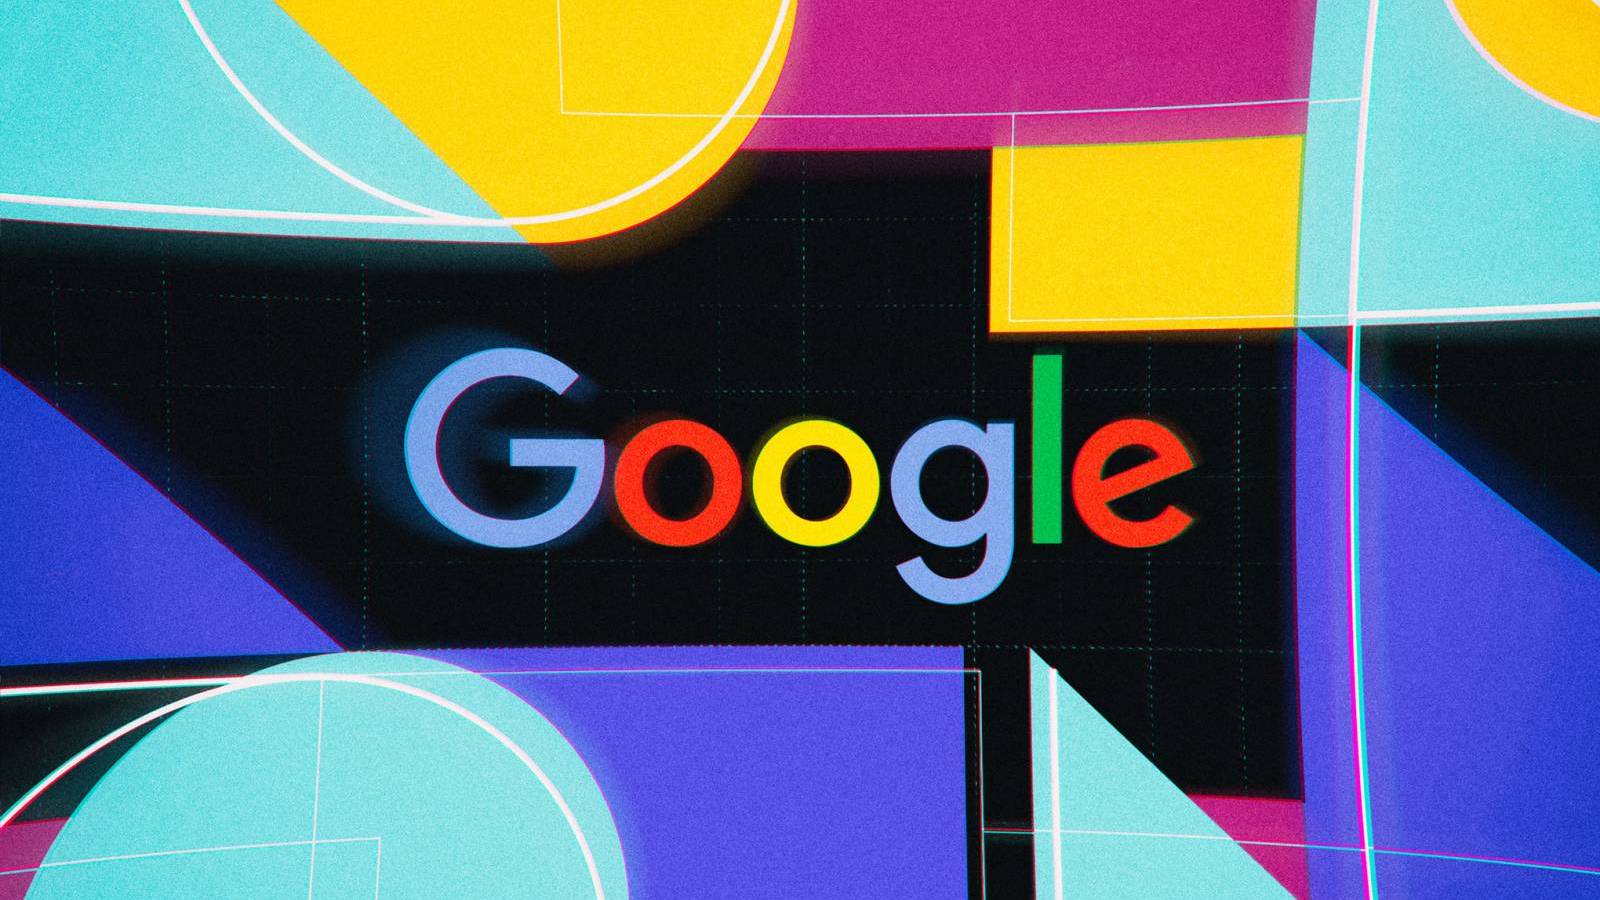 Google a Lansat o Noua Actualizare pentru Aplicatia oferita pe Telefoane si Tablete